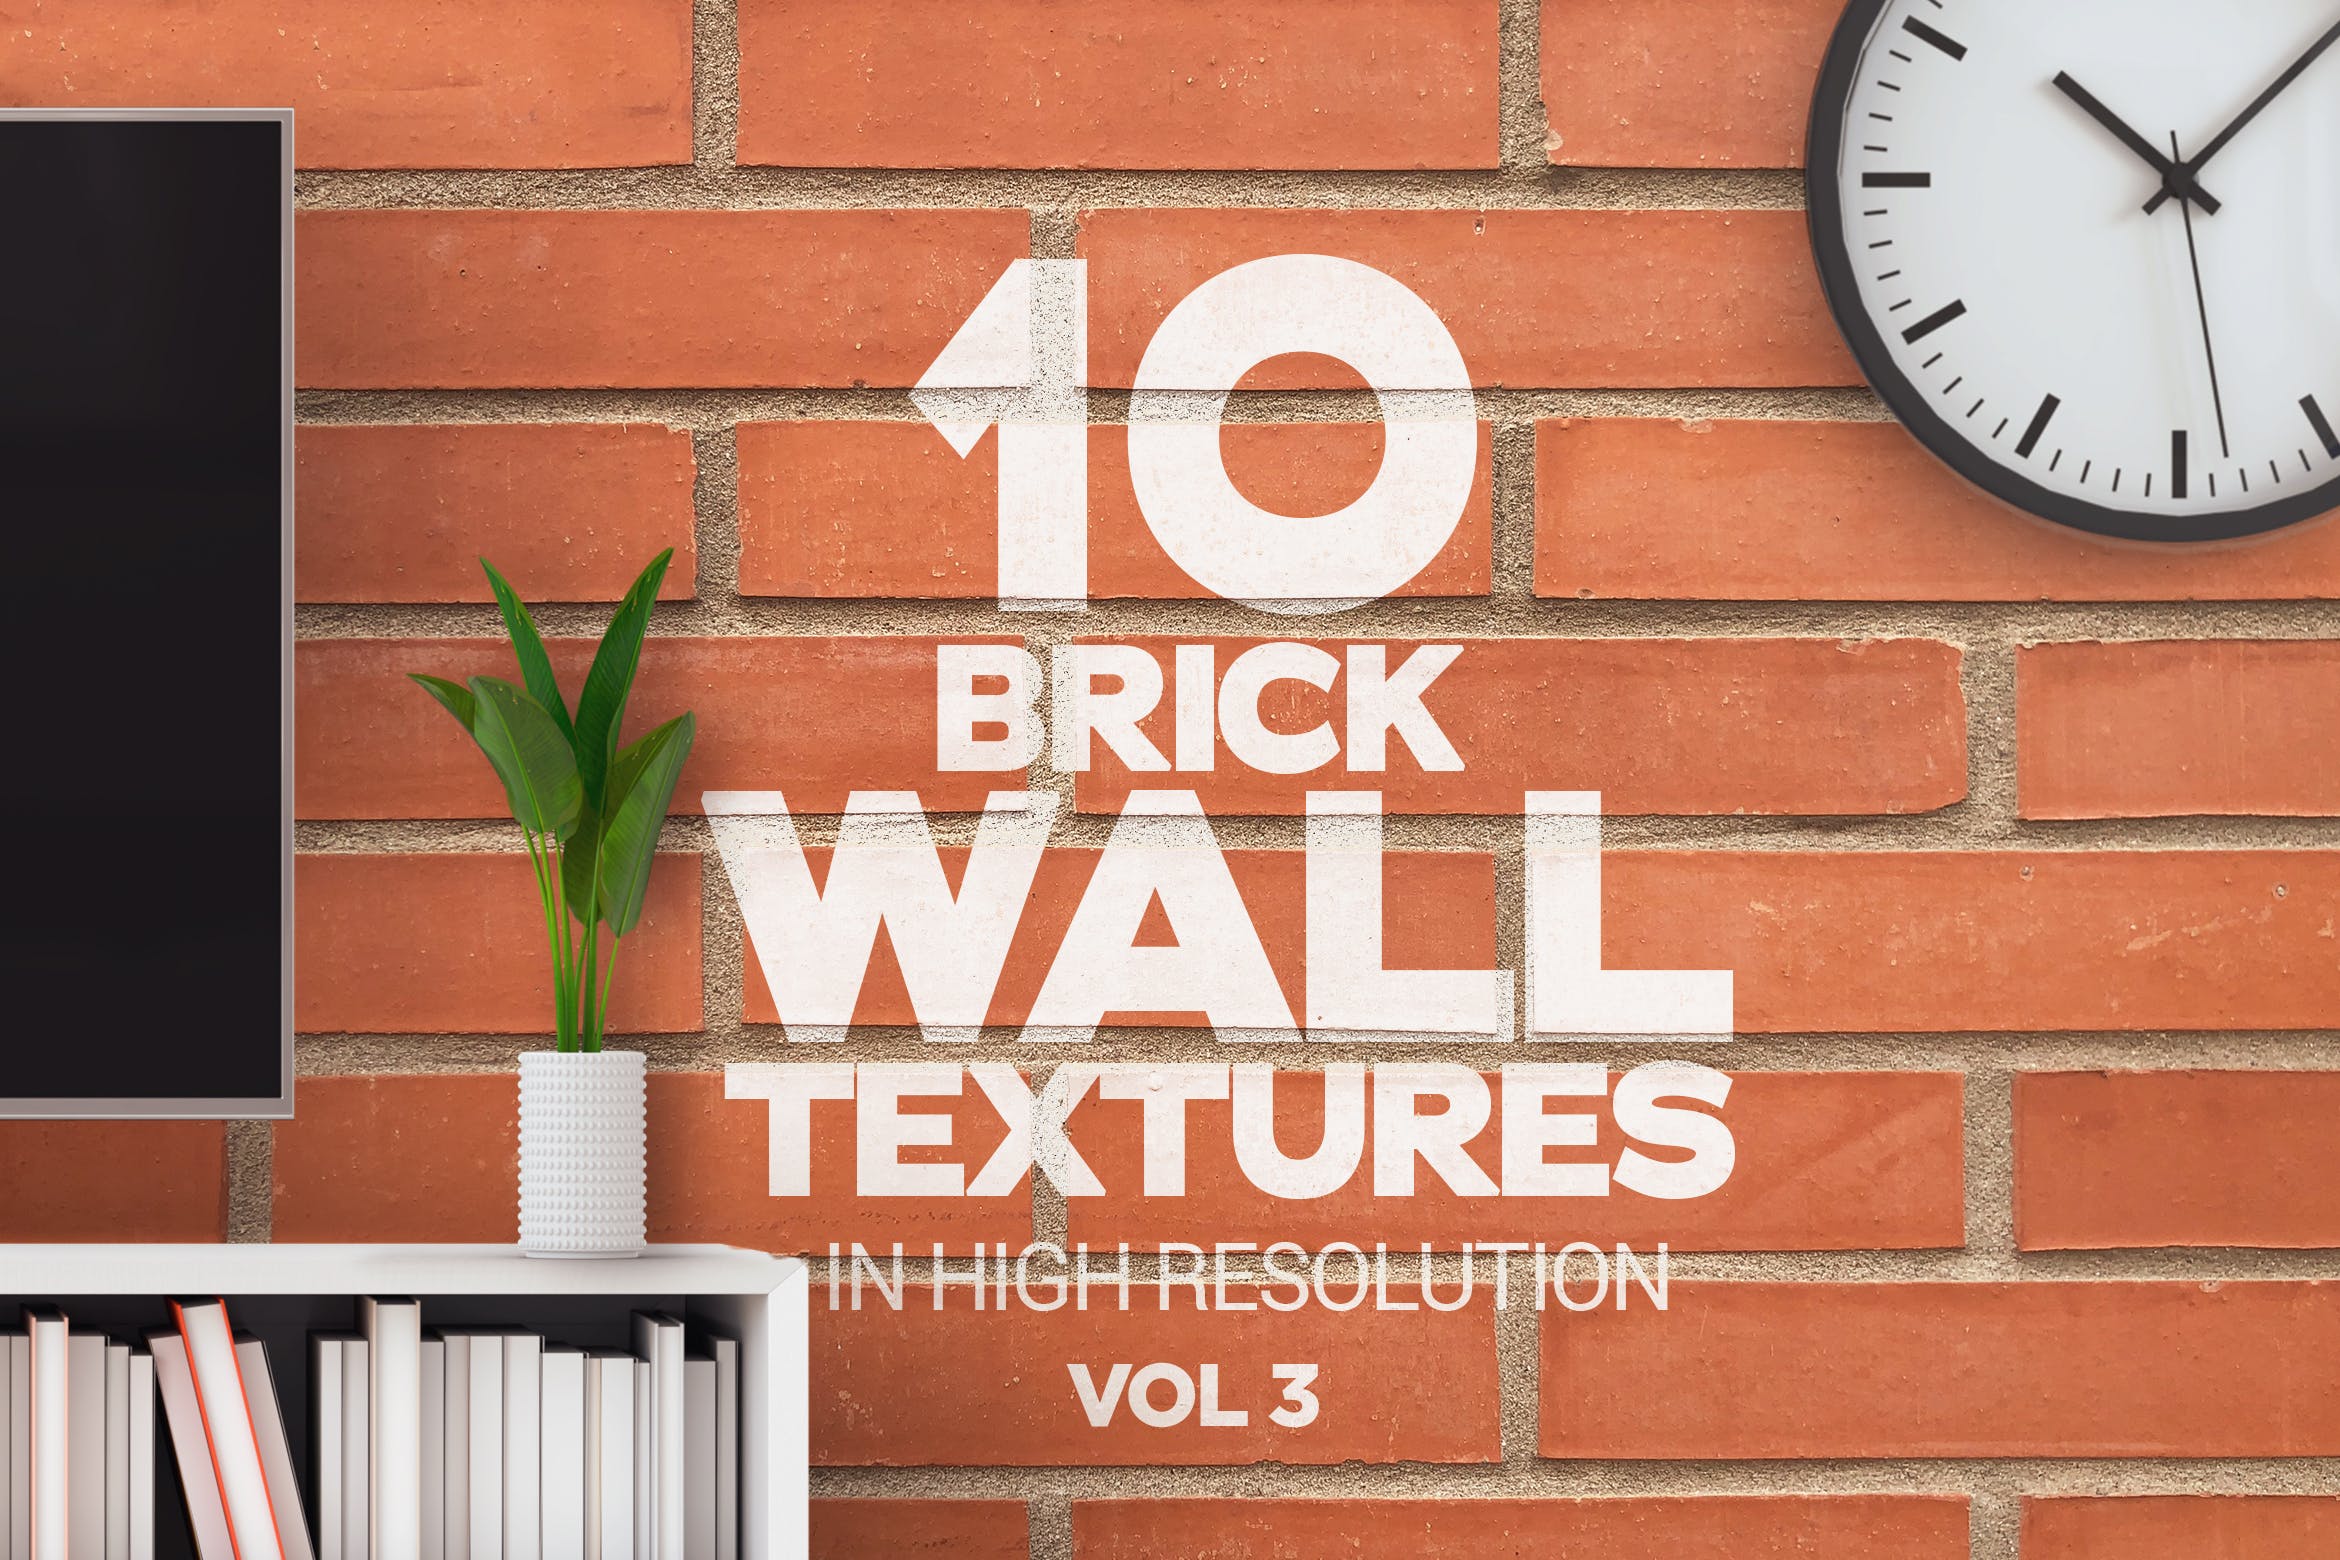 10张砖墙纹理高清蚂蚁素材精选背景素材v3 Brick Wall Textures x10 Vol 3插图